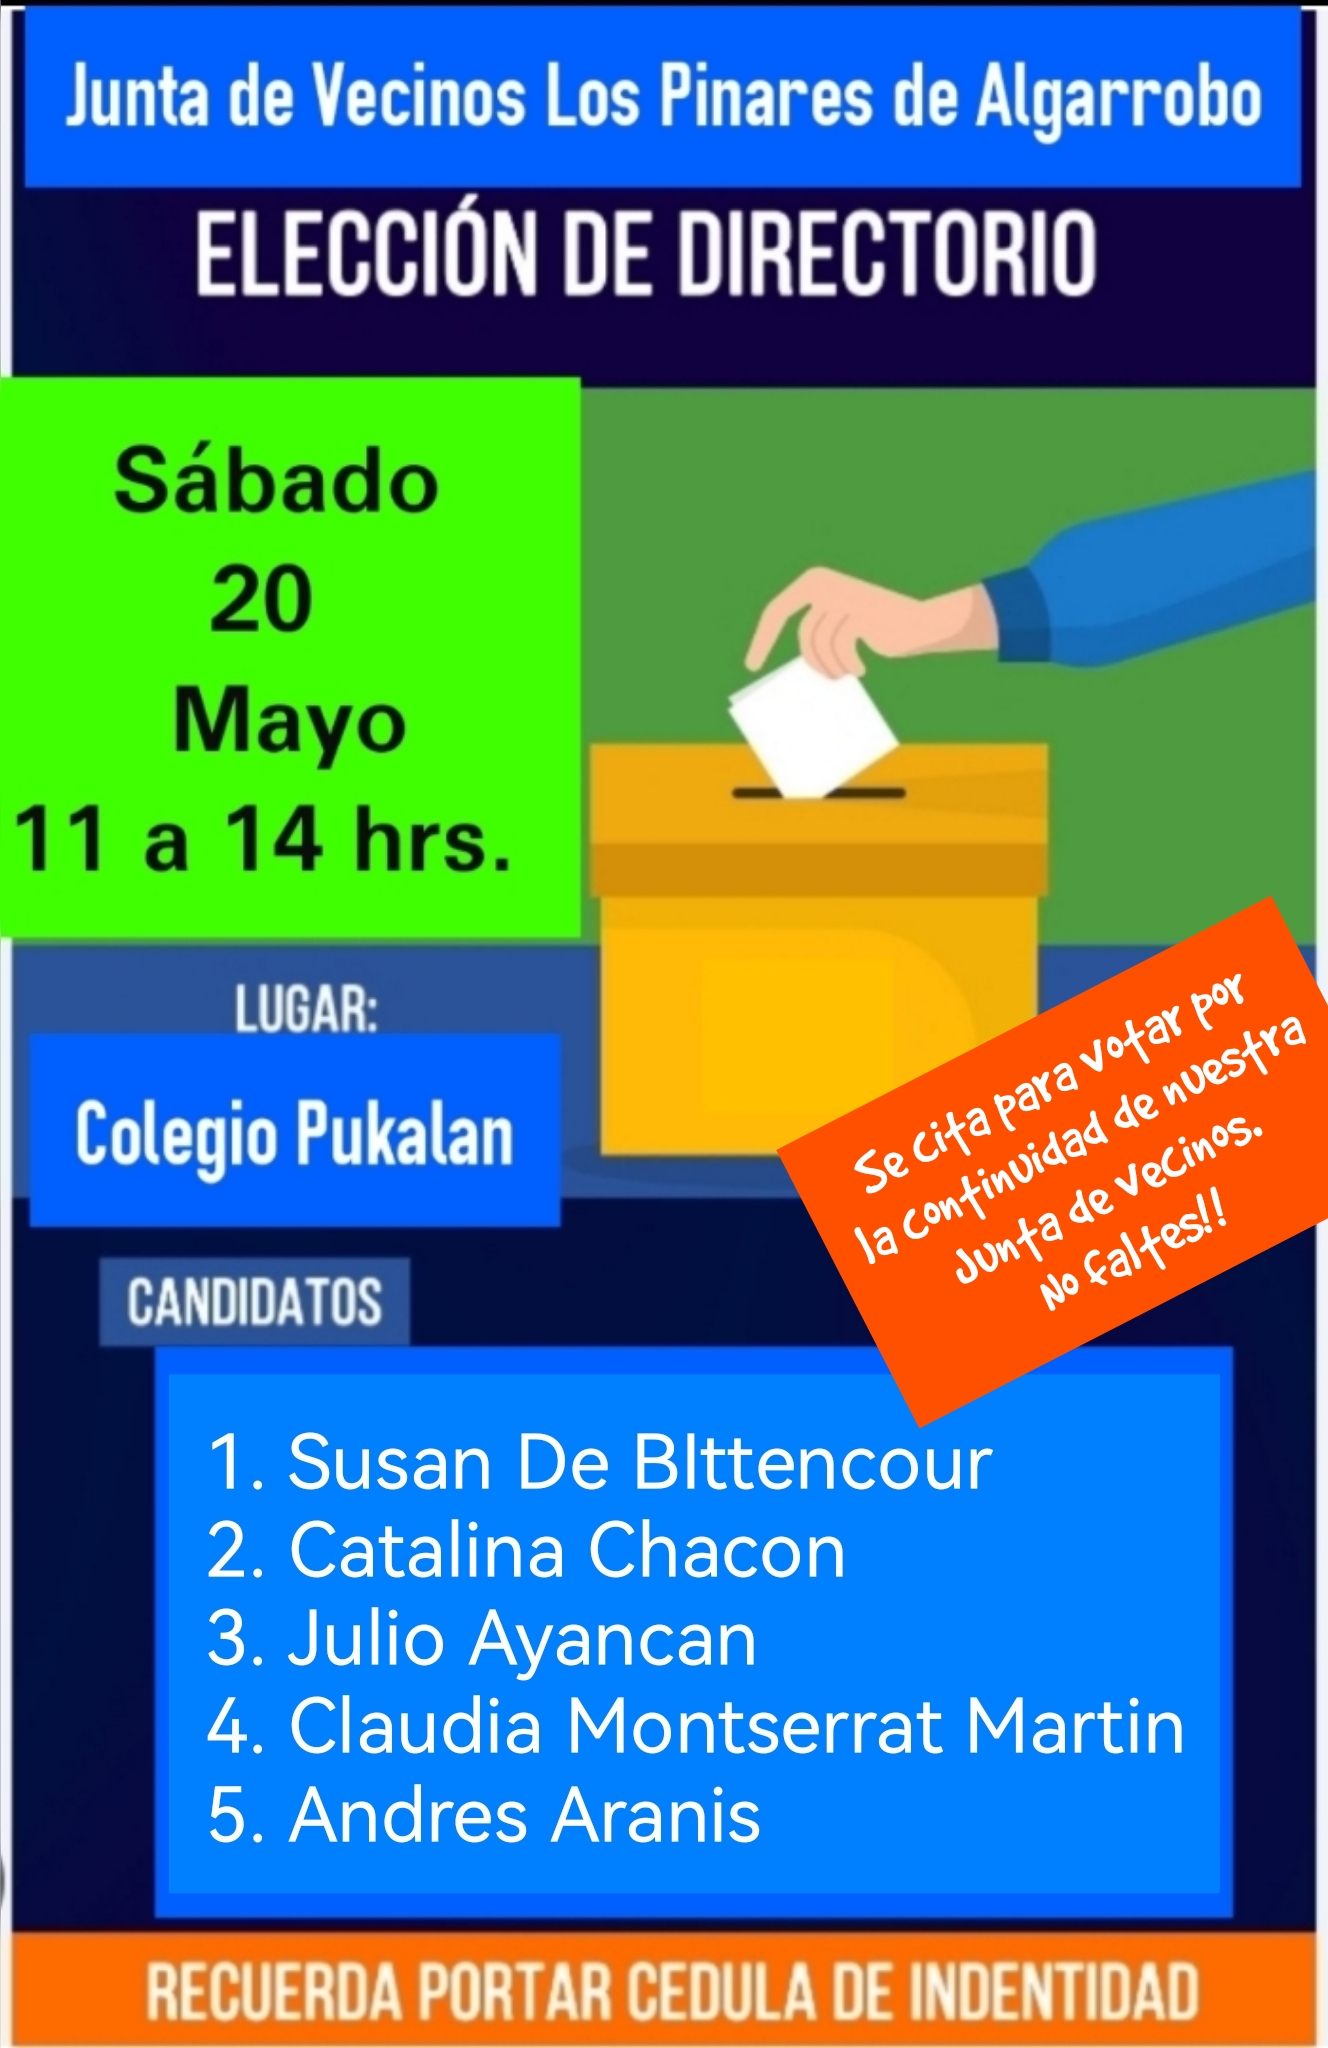 Elecciones JJVV Los Pinares de Algarrobo